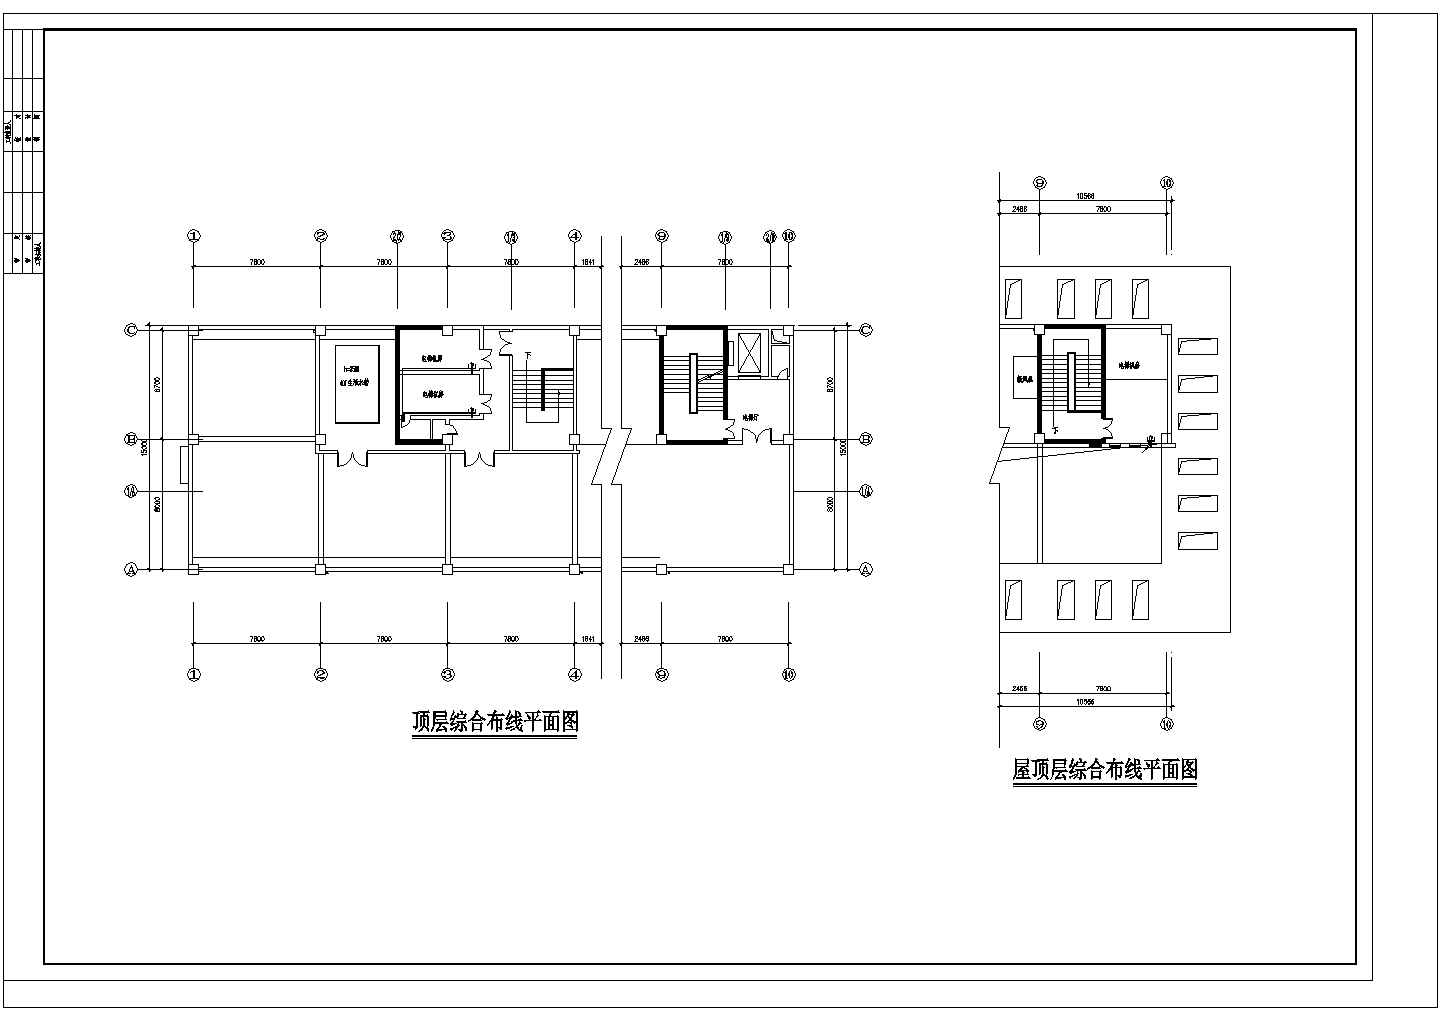 全套医院综合楼建筑电气工程设计图纸-36